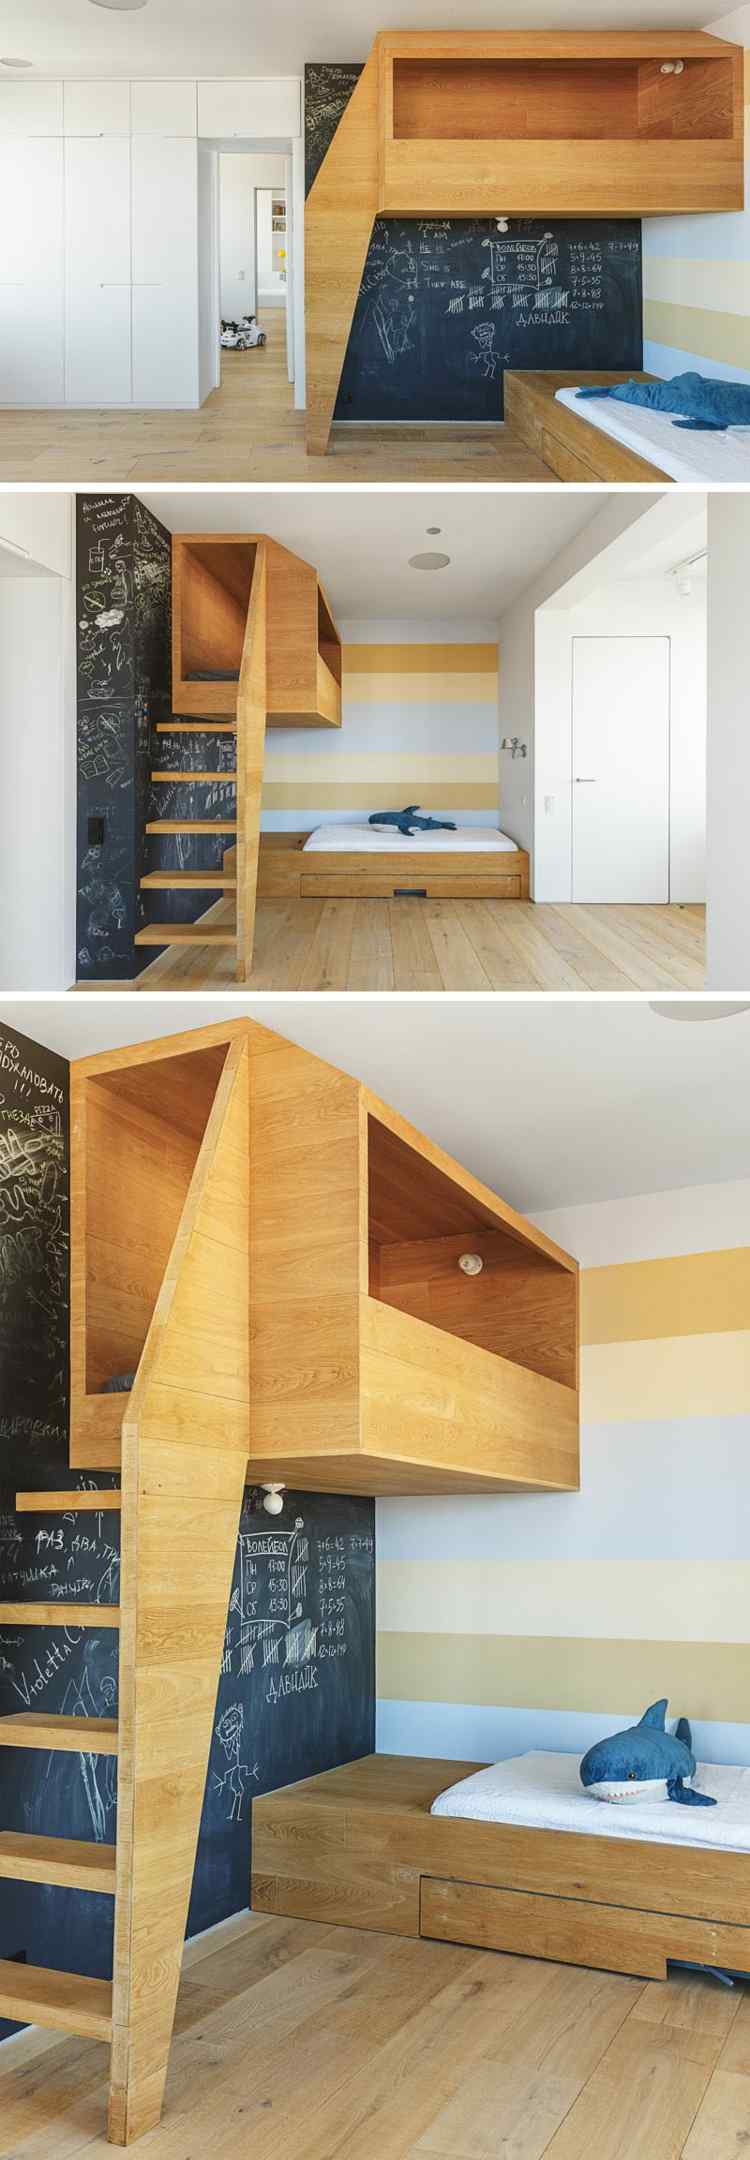 Legehus lavet af træ, naturmateriale-seng-børneværelse-plyslegetøj-haj-væg-bogstavet-dør-trappe-2